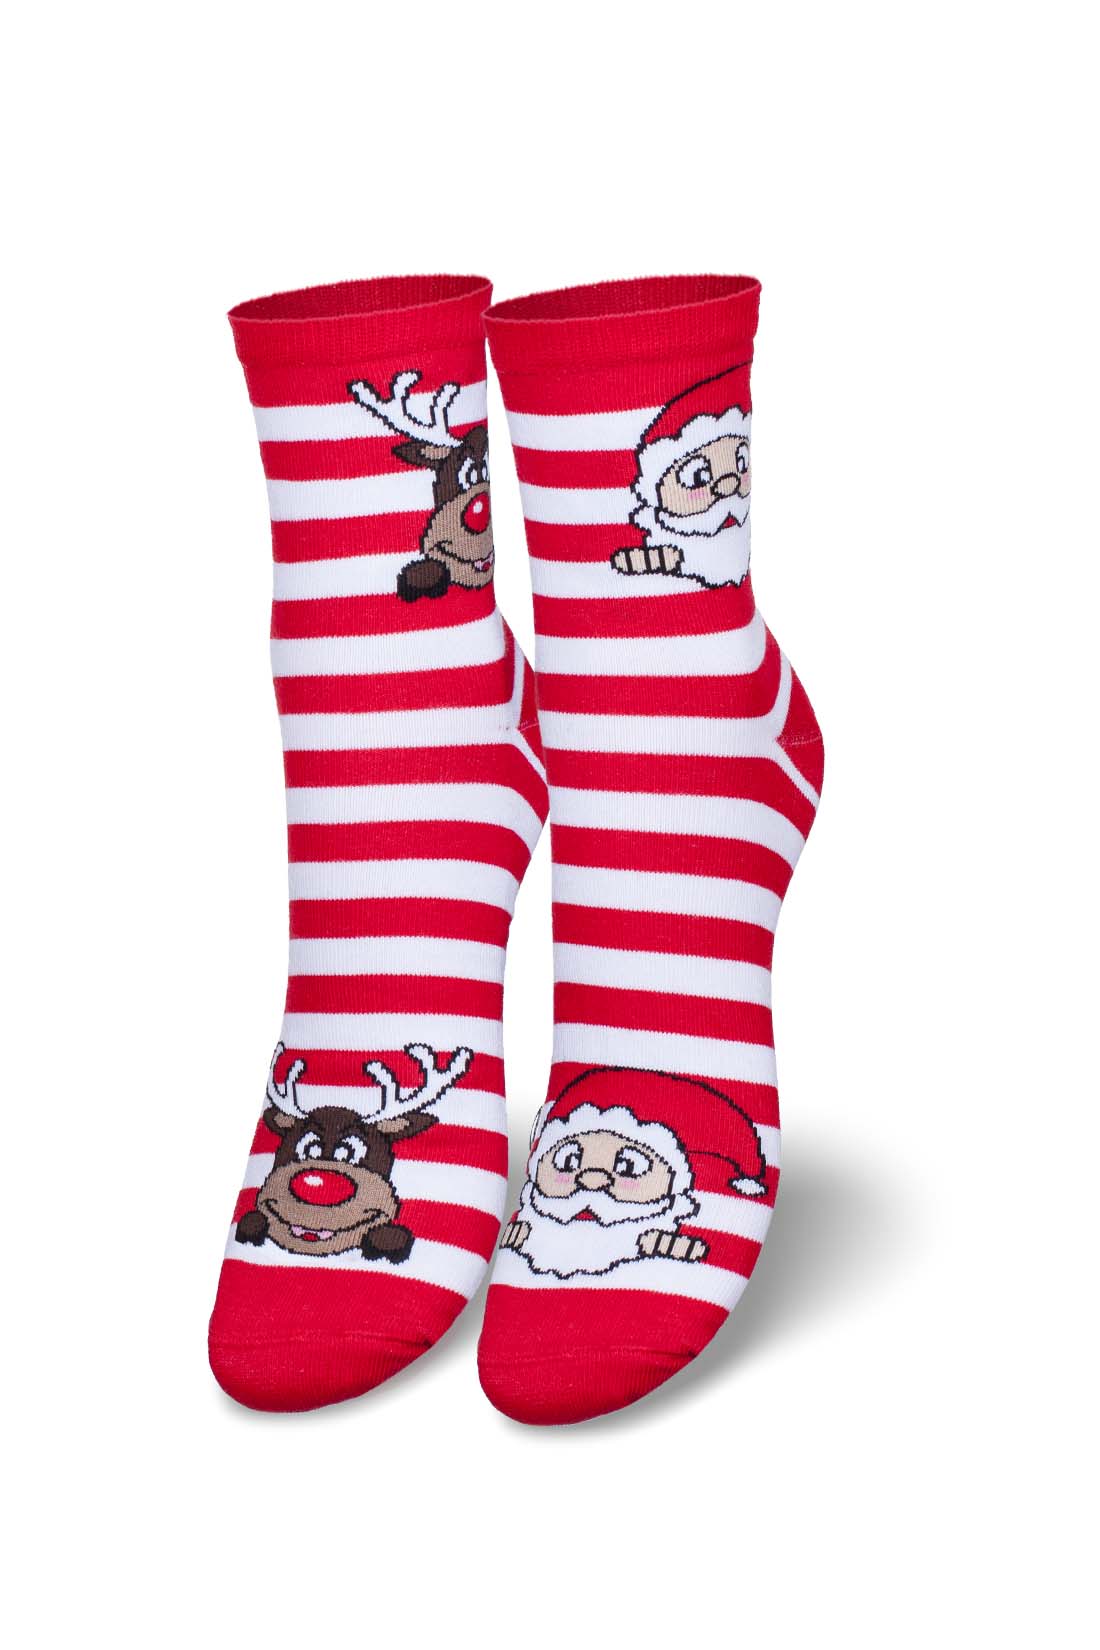 Damen Socken aus Baumwolle mit weißen und roten Streifen, mit Rentier und Weihnachtsmann.